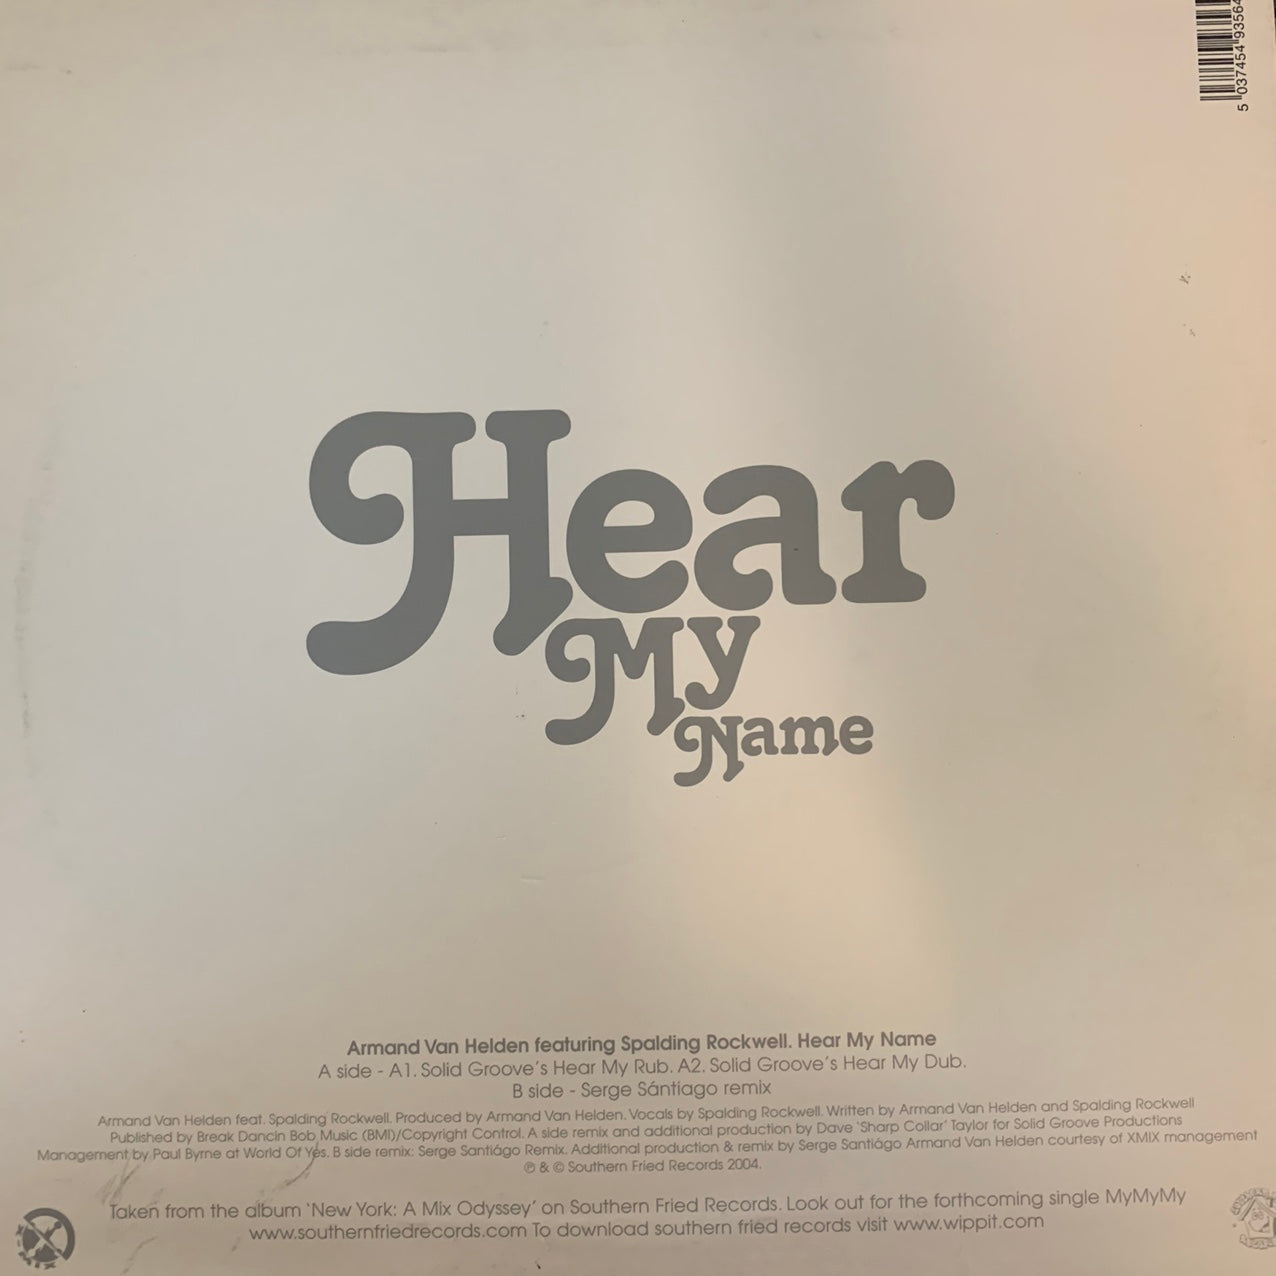 Armand Van Helden “Hear My Name” 3 Track 12inch Vinyl